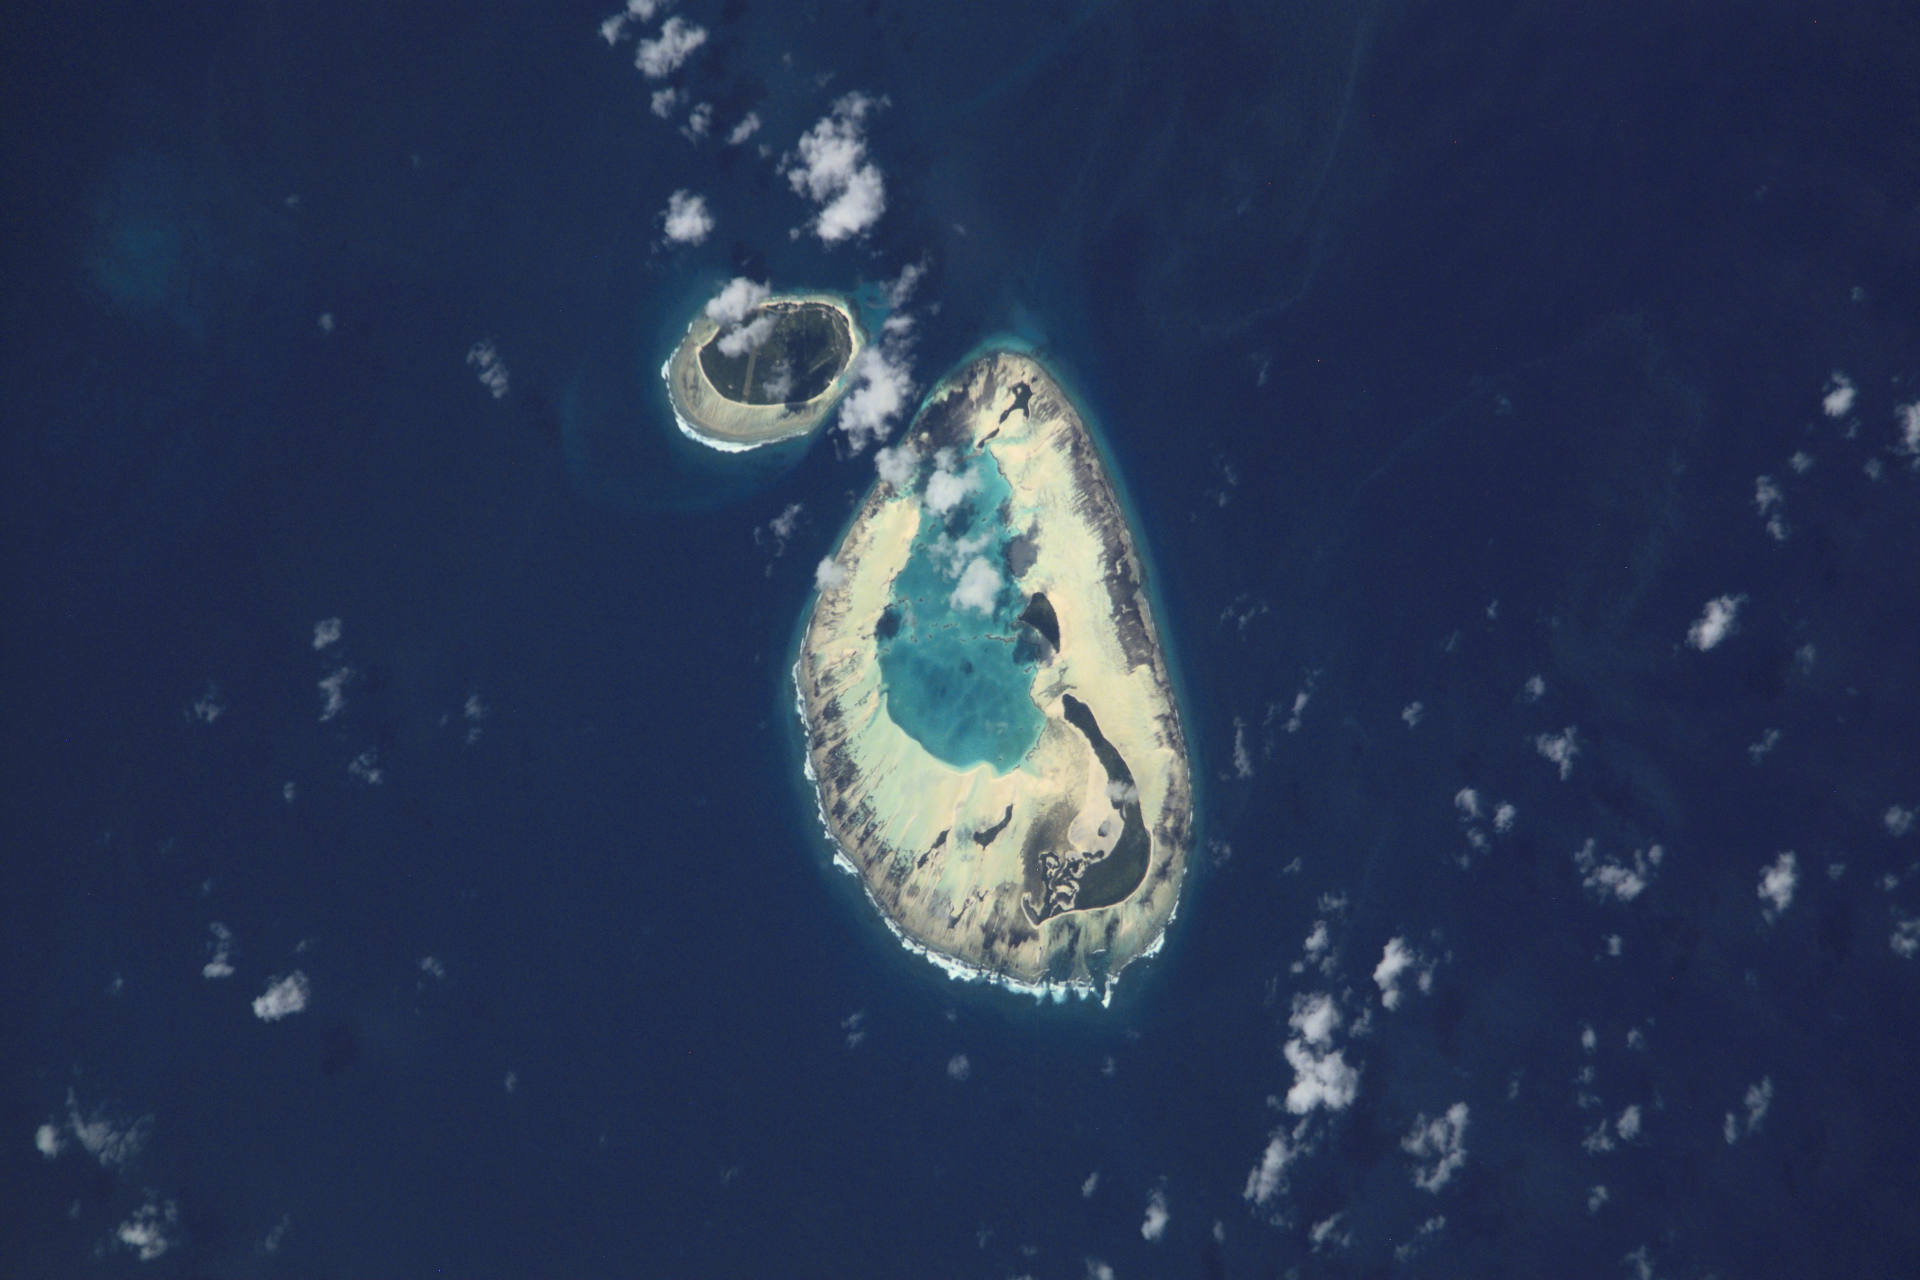 Сейшелийн арлуудын алслагдсан арлуудыг шинэ судалгаагаар